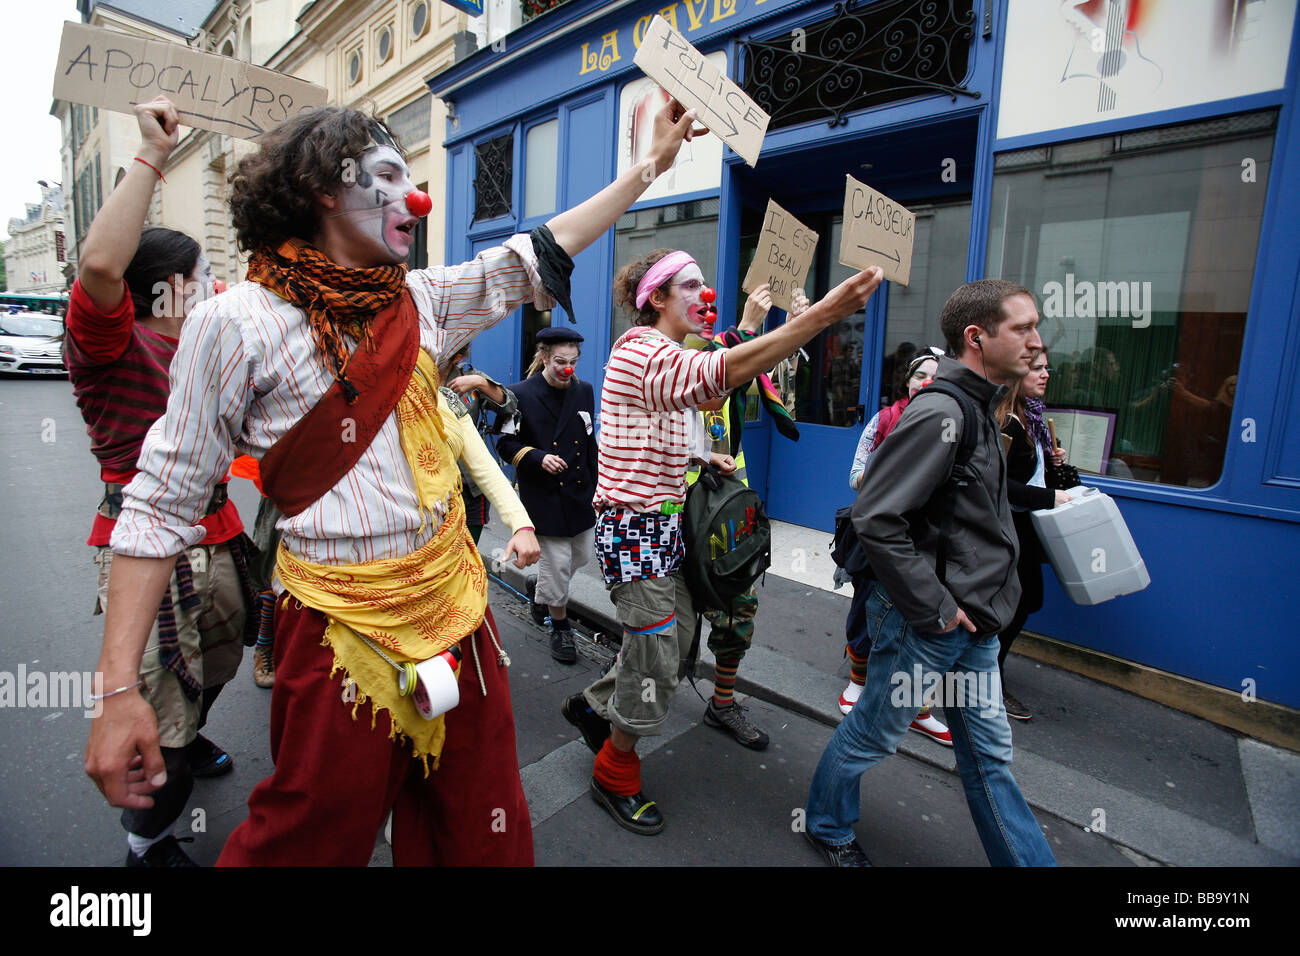 Les étudiants de l'université habillés en clowns suivent un policier en civil lors d'une manifestation de rue, Paris Banque D'Images